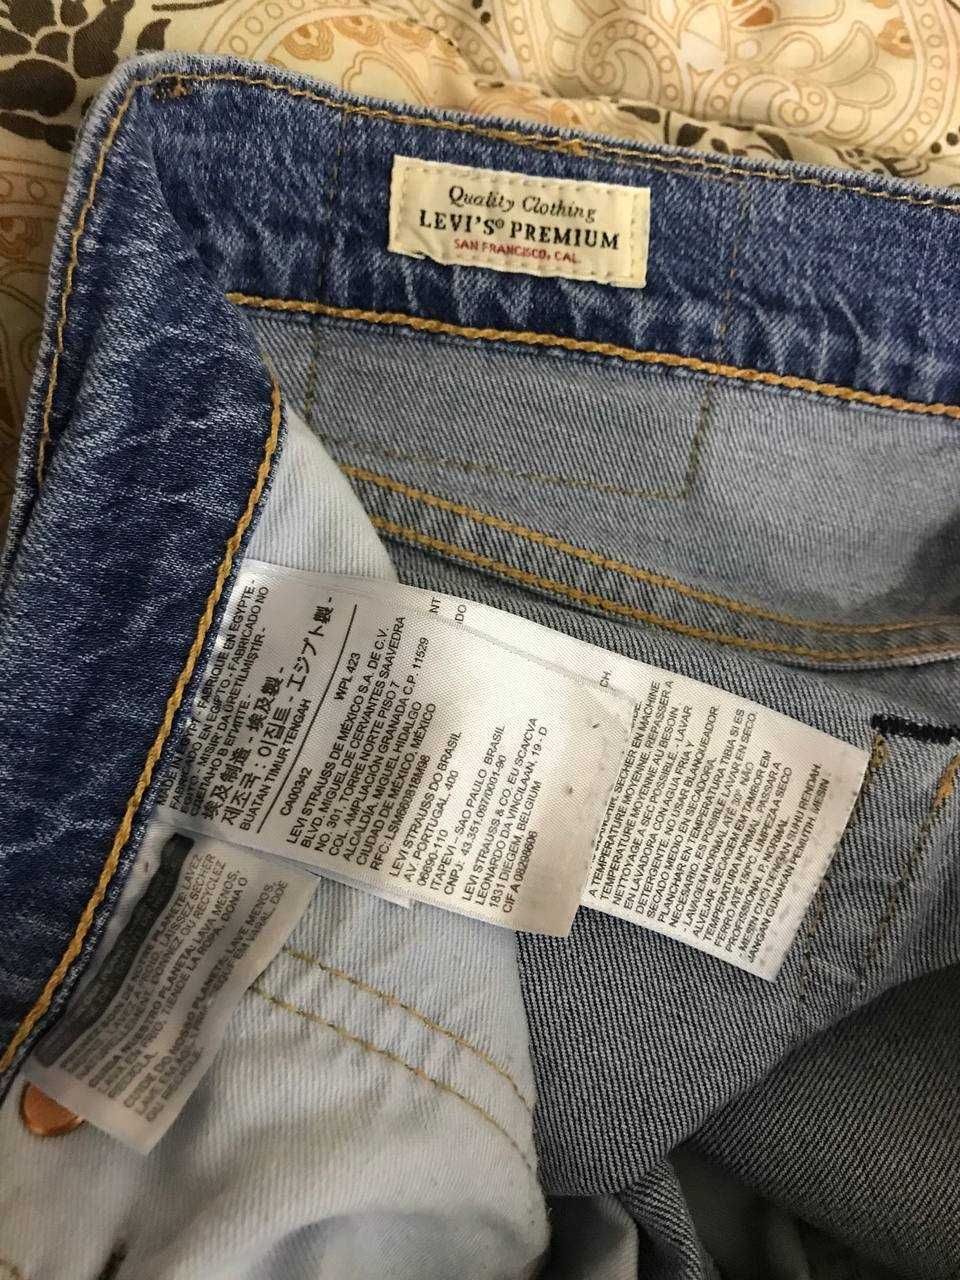 Мужские джинсы штаны Levi's 511 Premium Size 31/32 оригинал